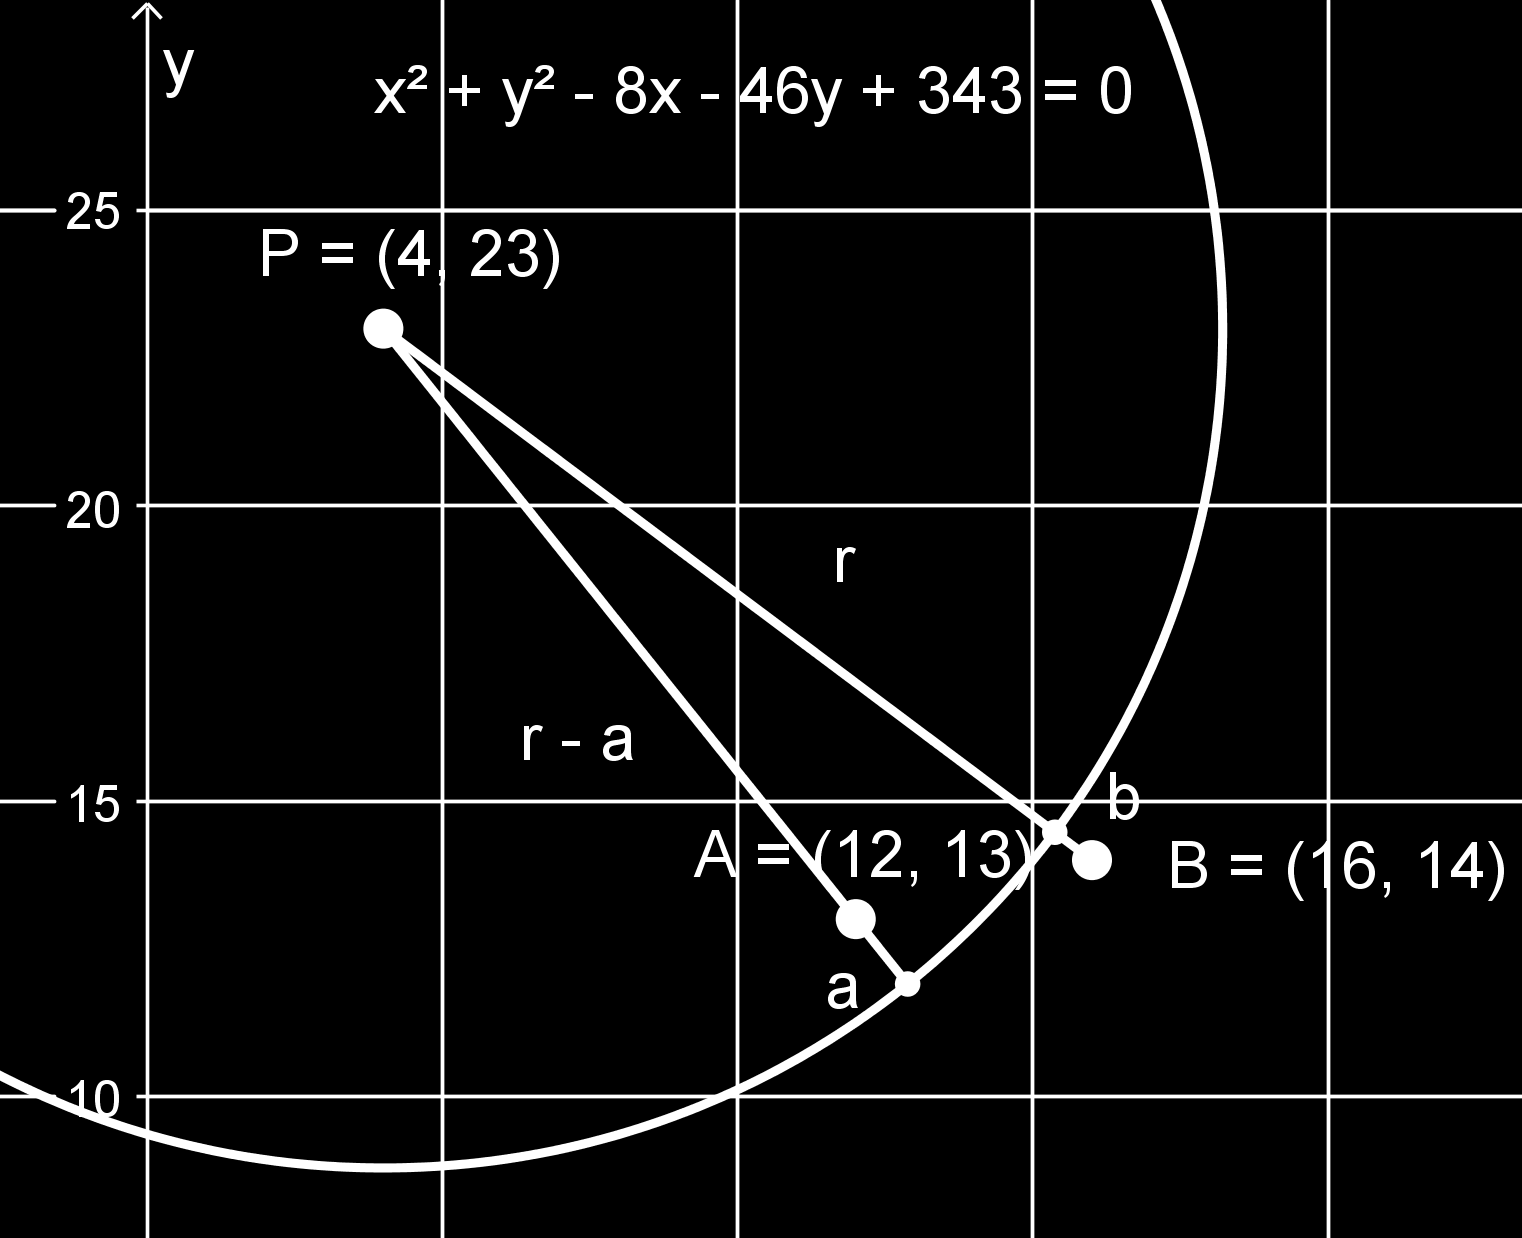 Siis ympyrän keskipiste on (4,3) ja säde r = 0 = 14,1.